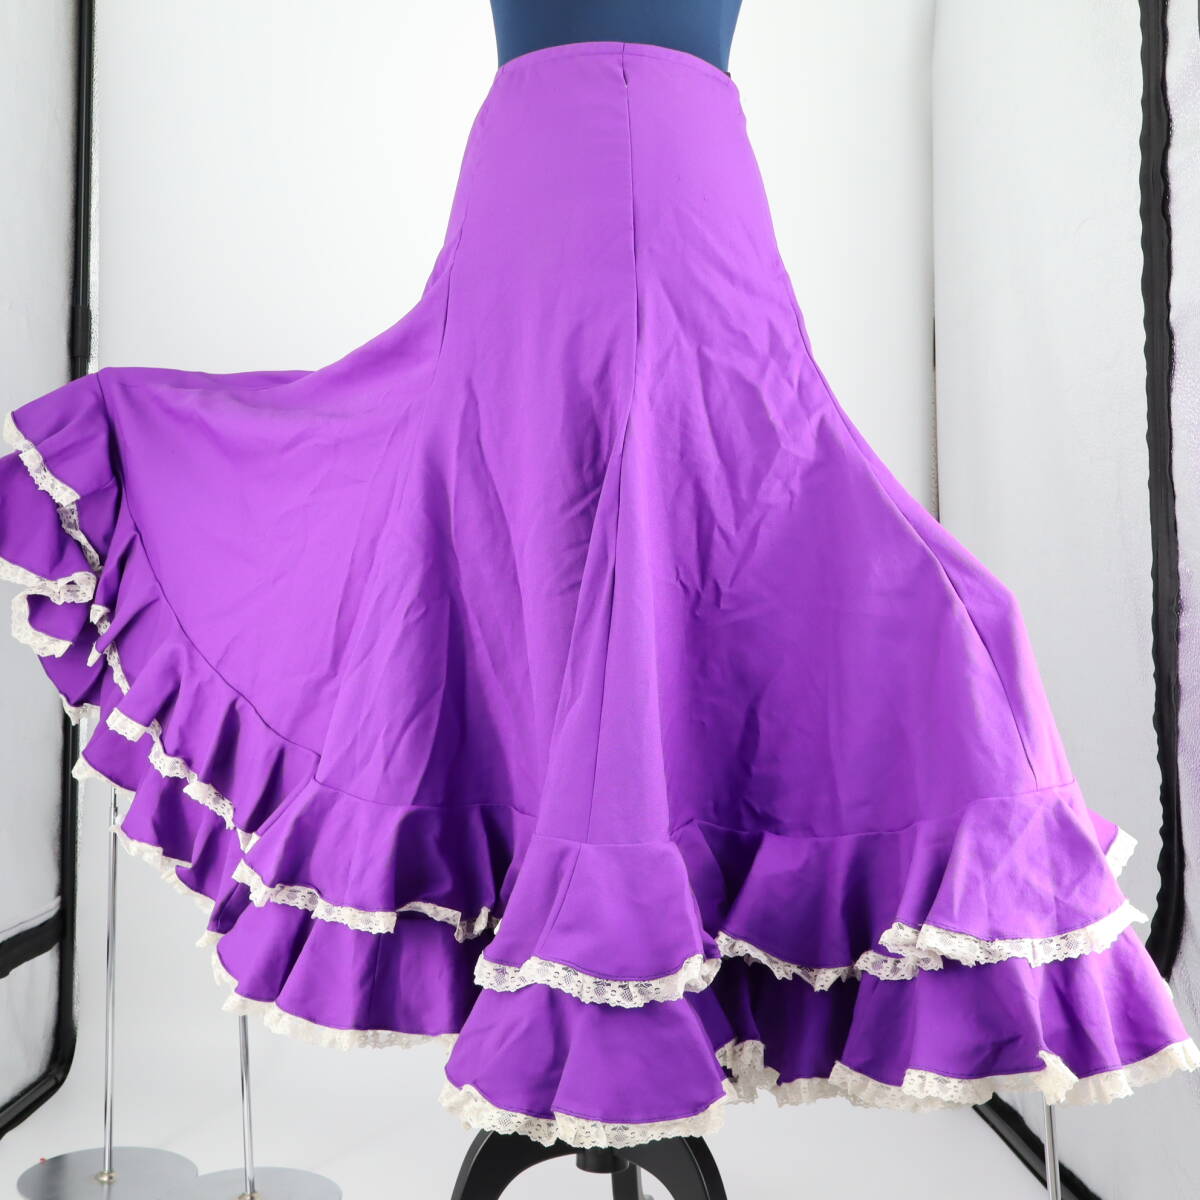 『送料無料』【美品 フラメンコ衣装】鮮やかパープル×レース地 ファルダ 大きく広がる裾 スカート Flamenco タンゴ